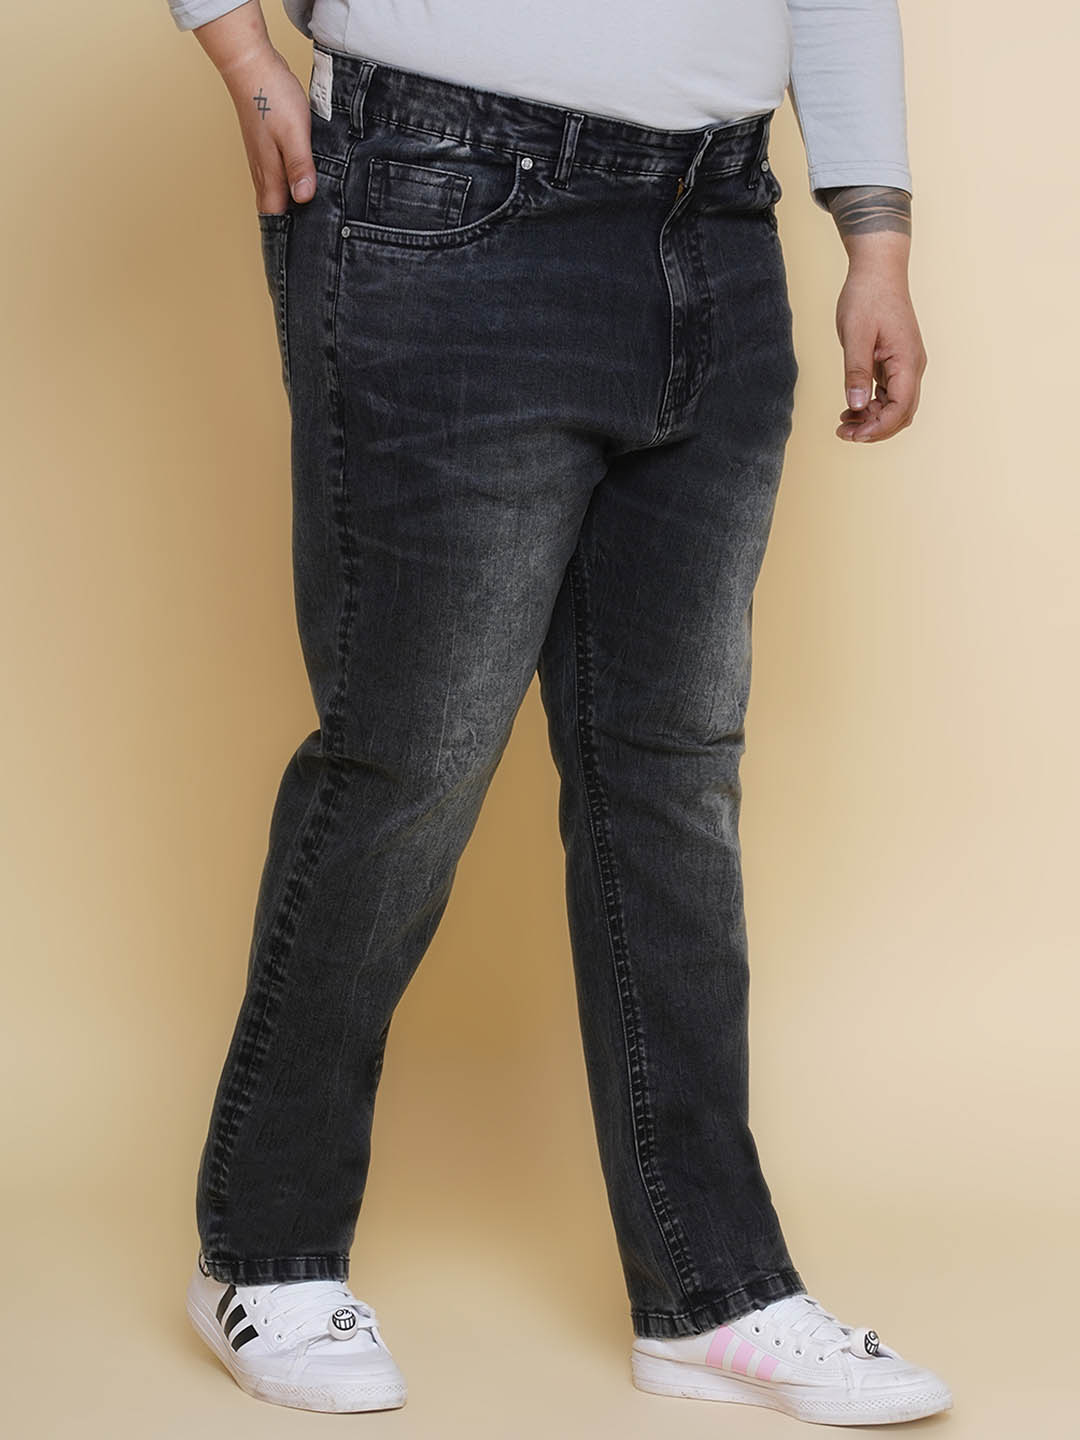 bottomwear/jeans/PJPJ6092/pjpj6092-3.jpg